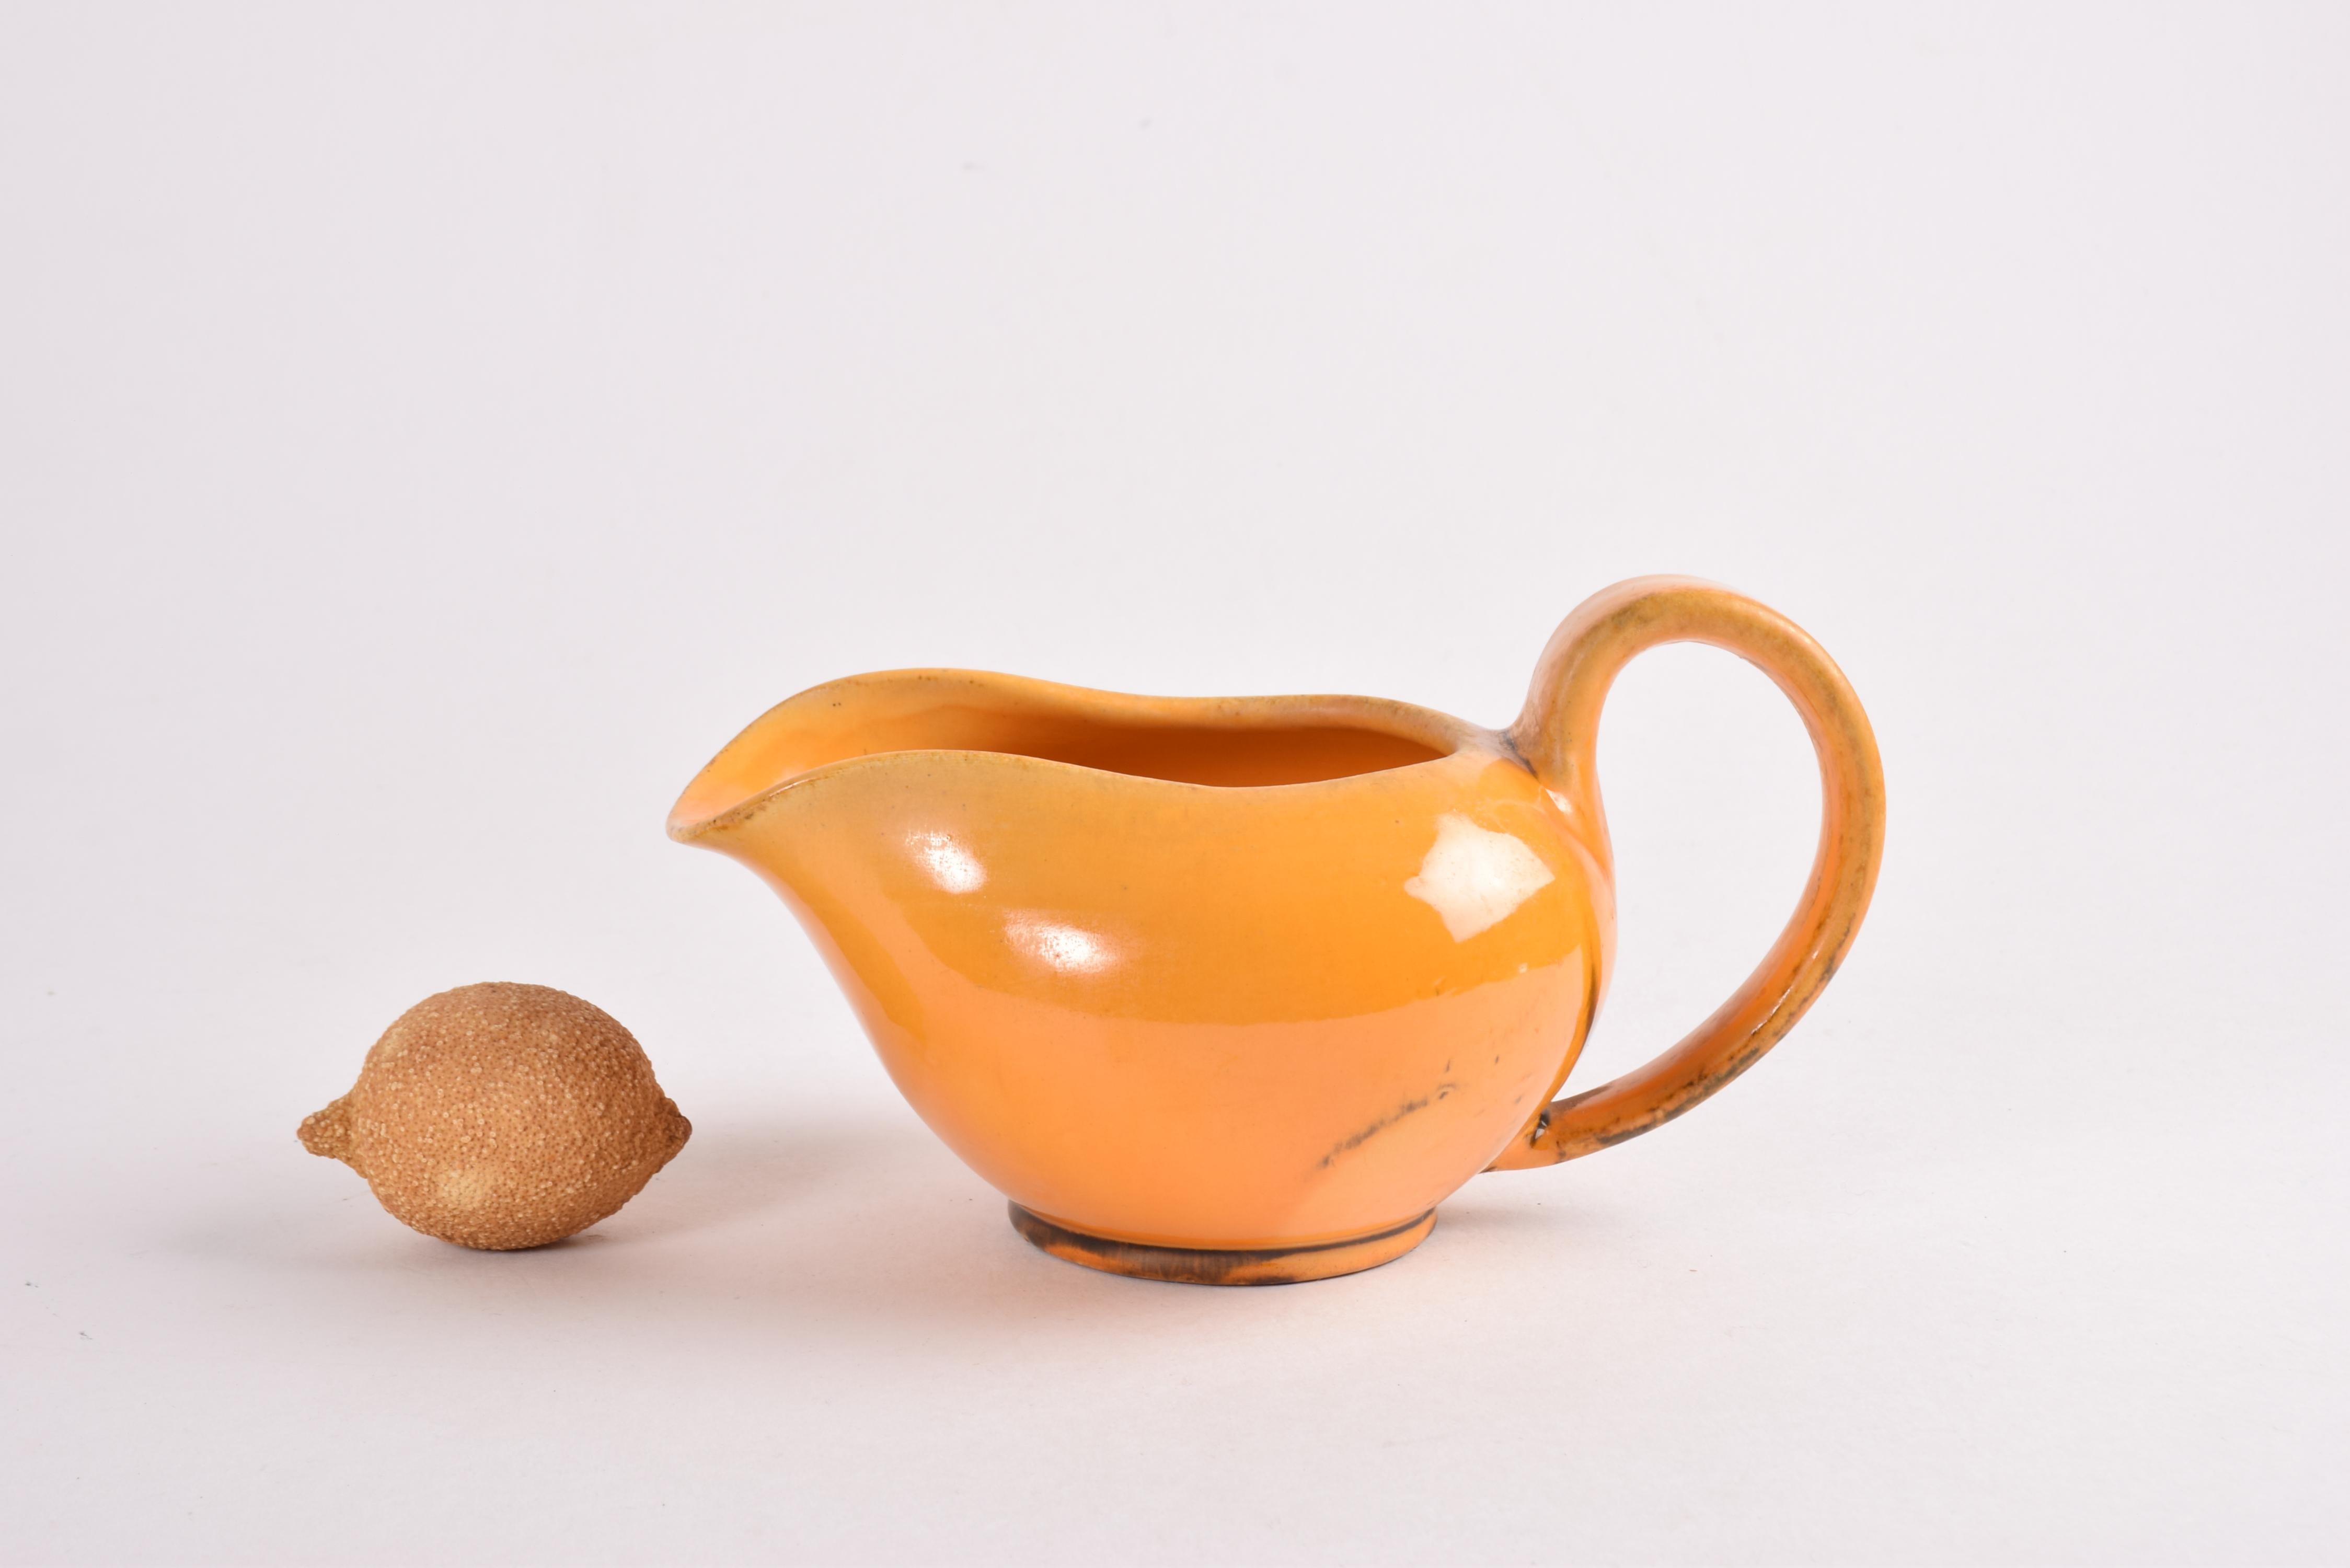 Art-Déco-Keramikkrug oder Krug, entworfen von Nils Kähler und hergestellt von Herman A. Kählers Keramikwerkstatt in den 1930er oder 40er Jahren.
Der Krug ist mit einer warmgelben Uranglasur mit braunen Elementen verziert. 

Handsigniert unter dem